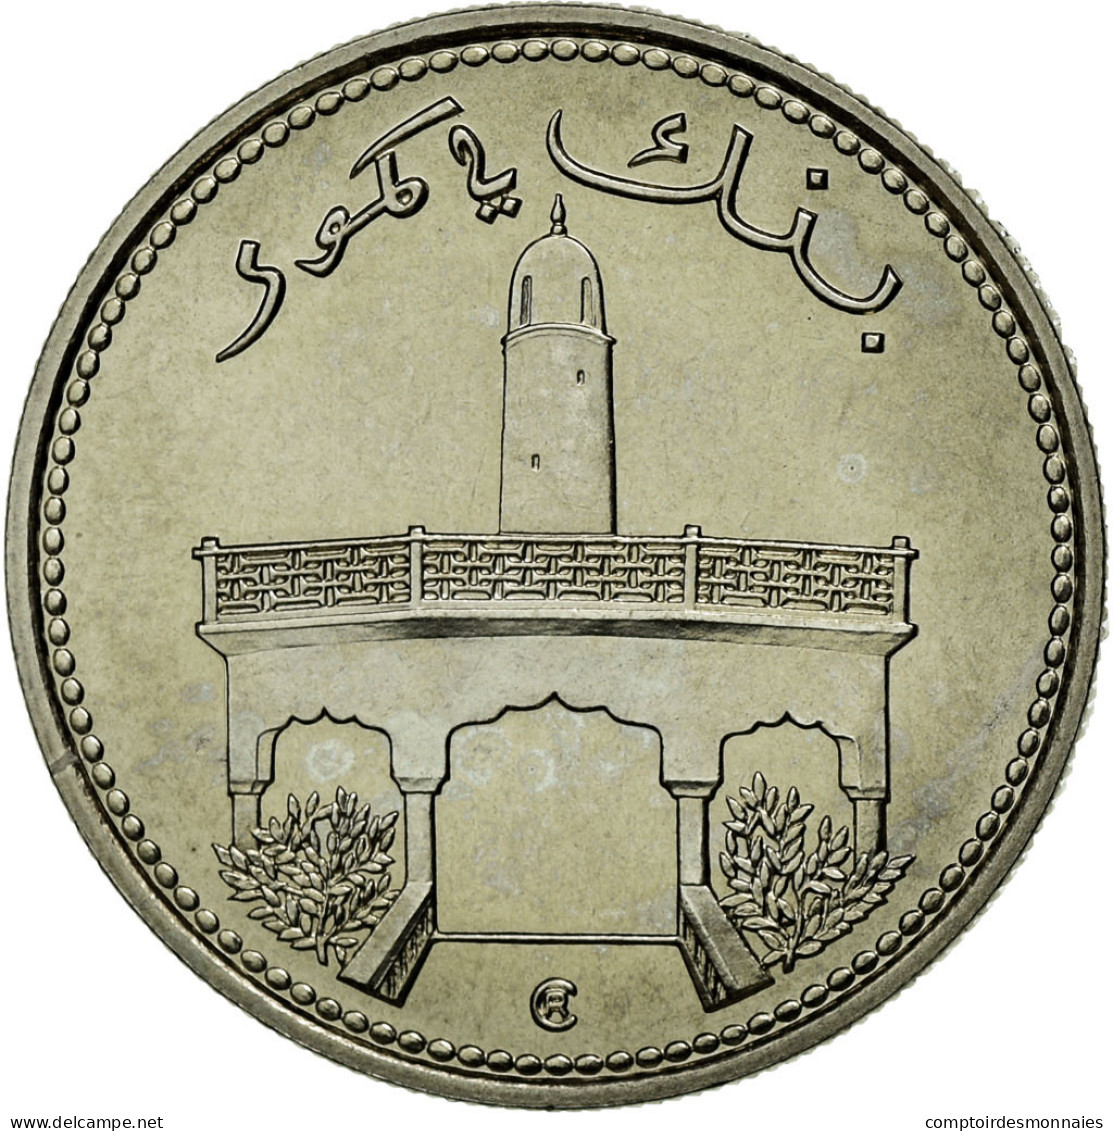 Monnaie, Comoros, 50 Francs, 1975, Paris, FDC, Nickel, KM:E6 - Comores